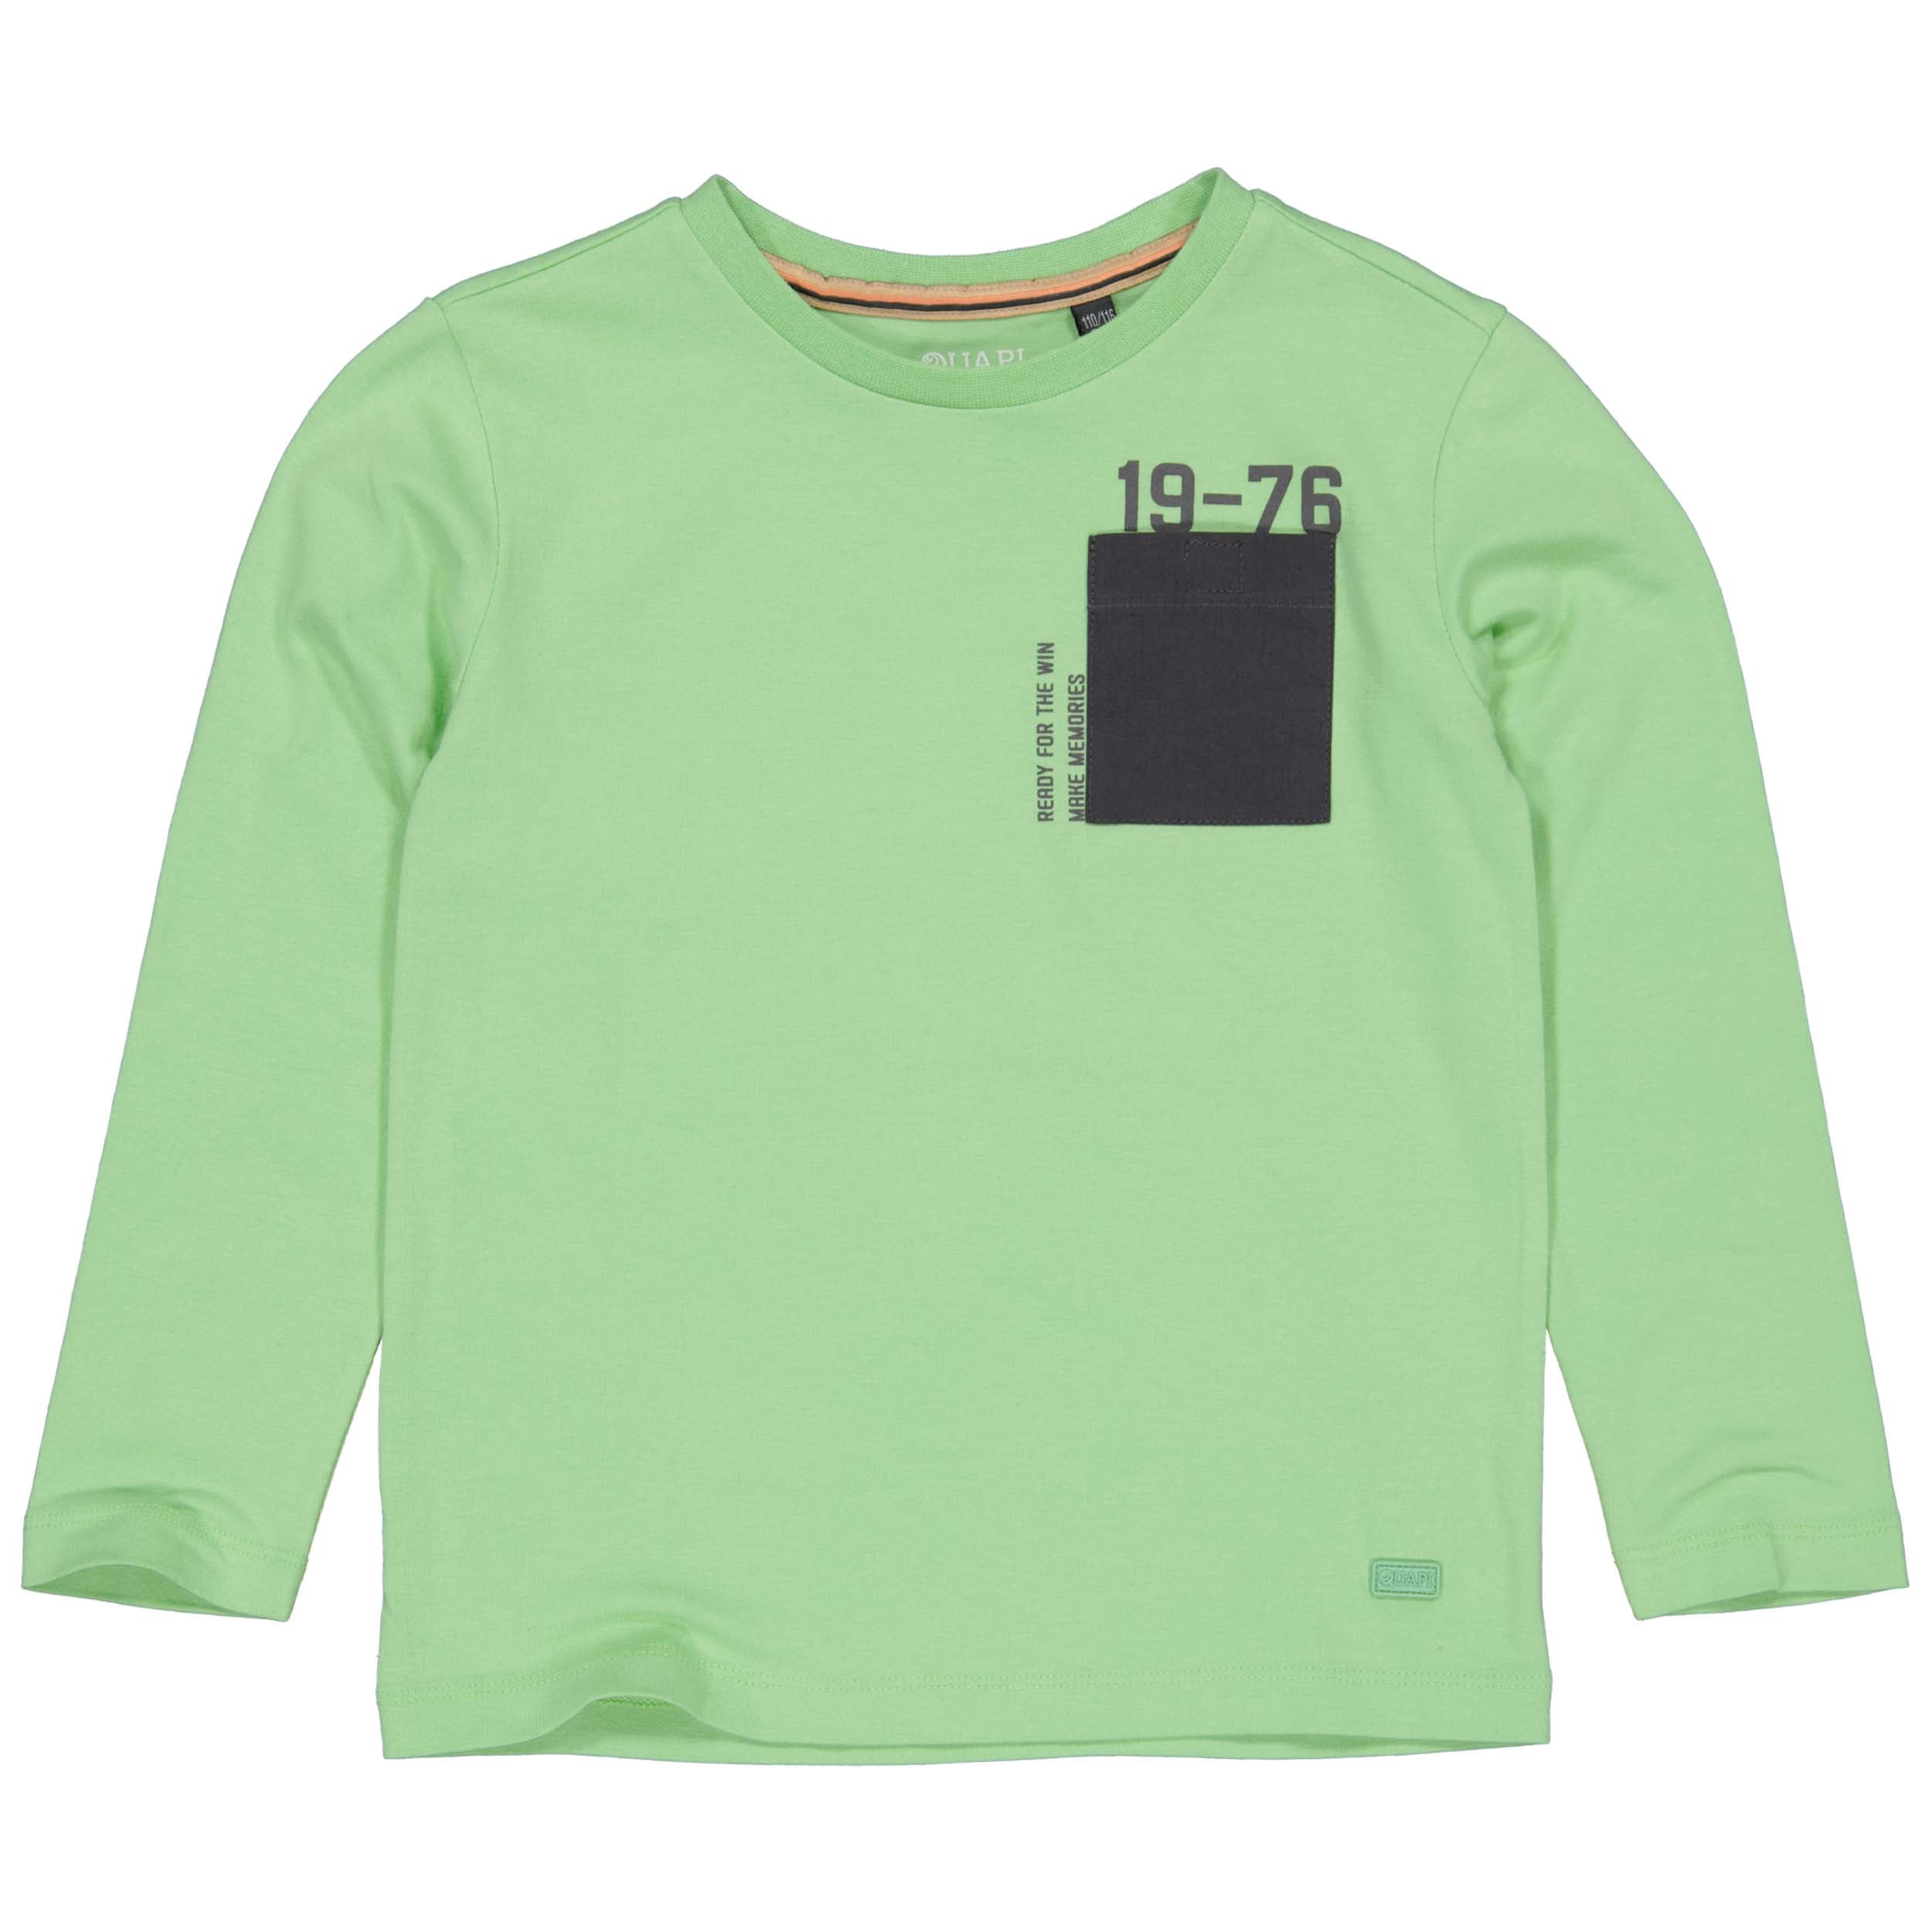 Jongens Sweater AARTQW231 van Quapi in de kleur Green Sport in maat 134-140.